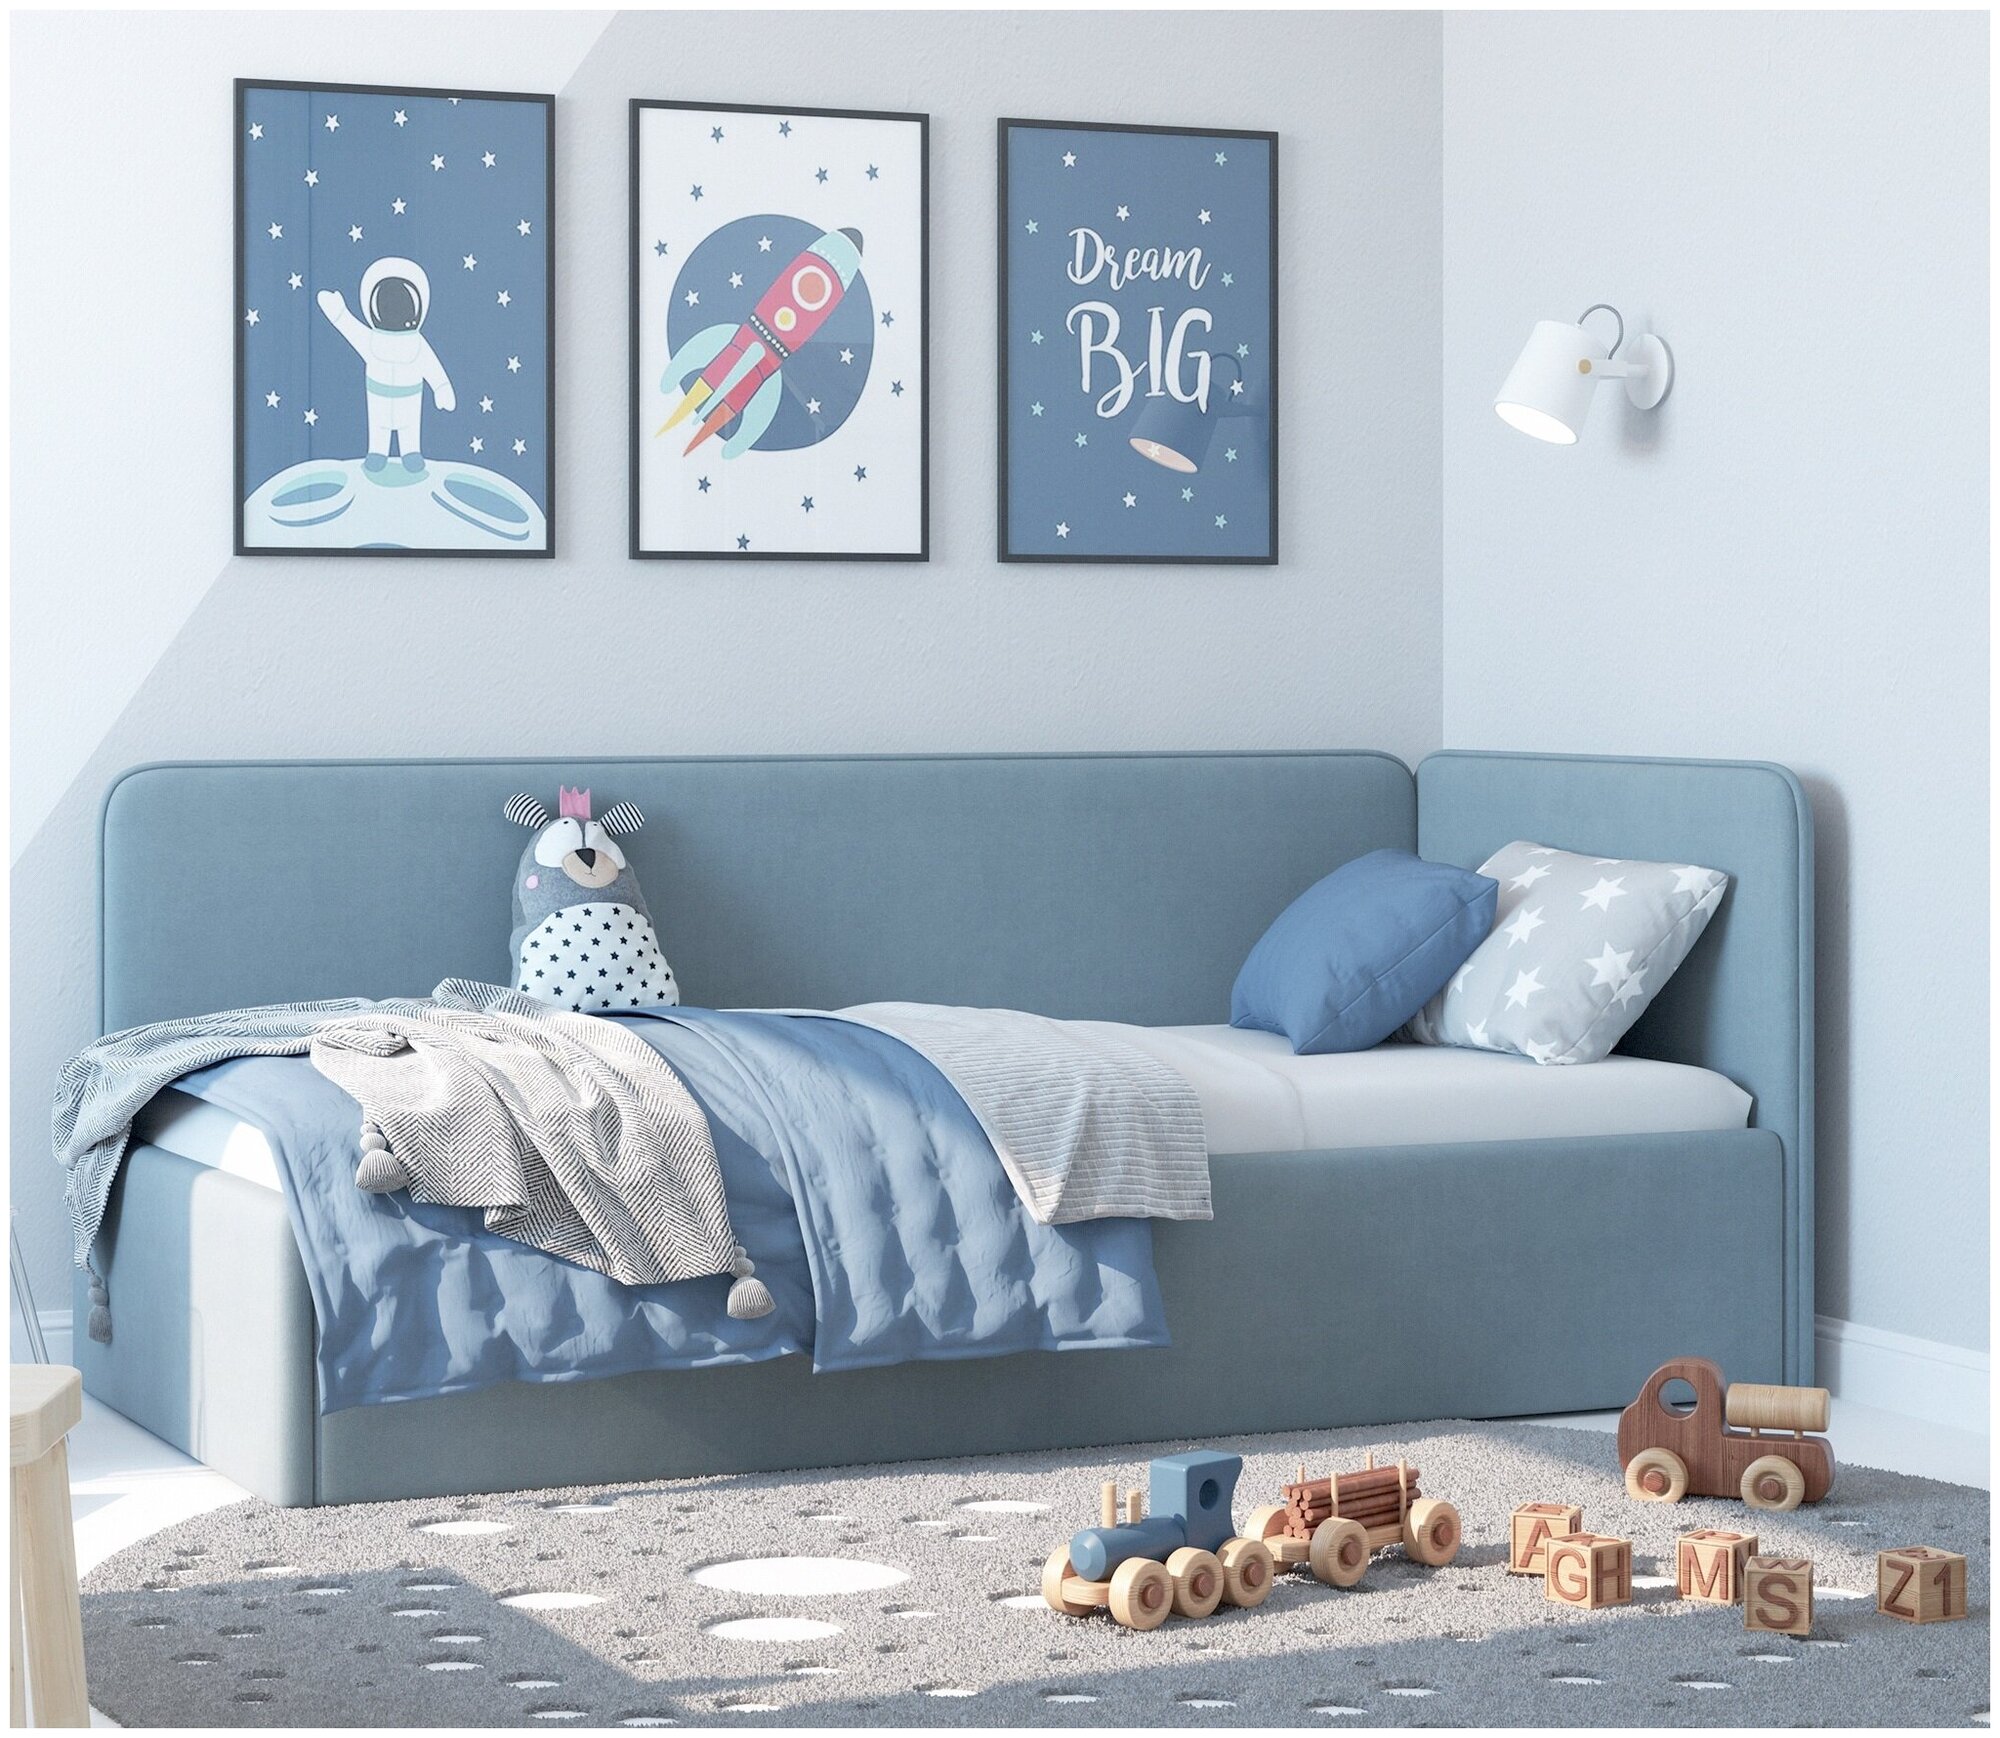 Кровать - диван односпальная детская Romack Leonardo 80х180 голубой сящиком для белья — купить в интернет-магазине по низкой цене на ЯндексМаркете